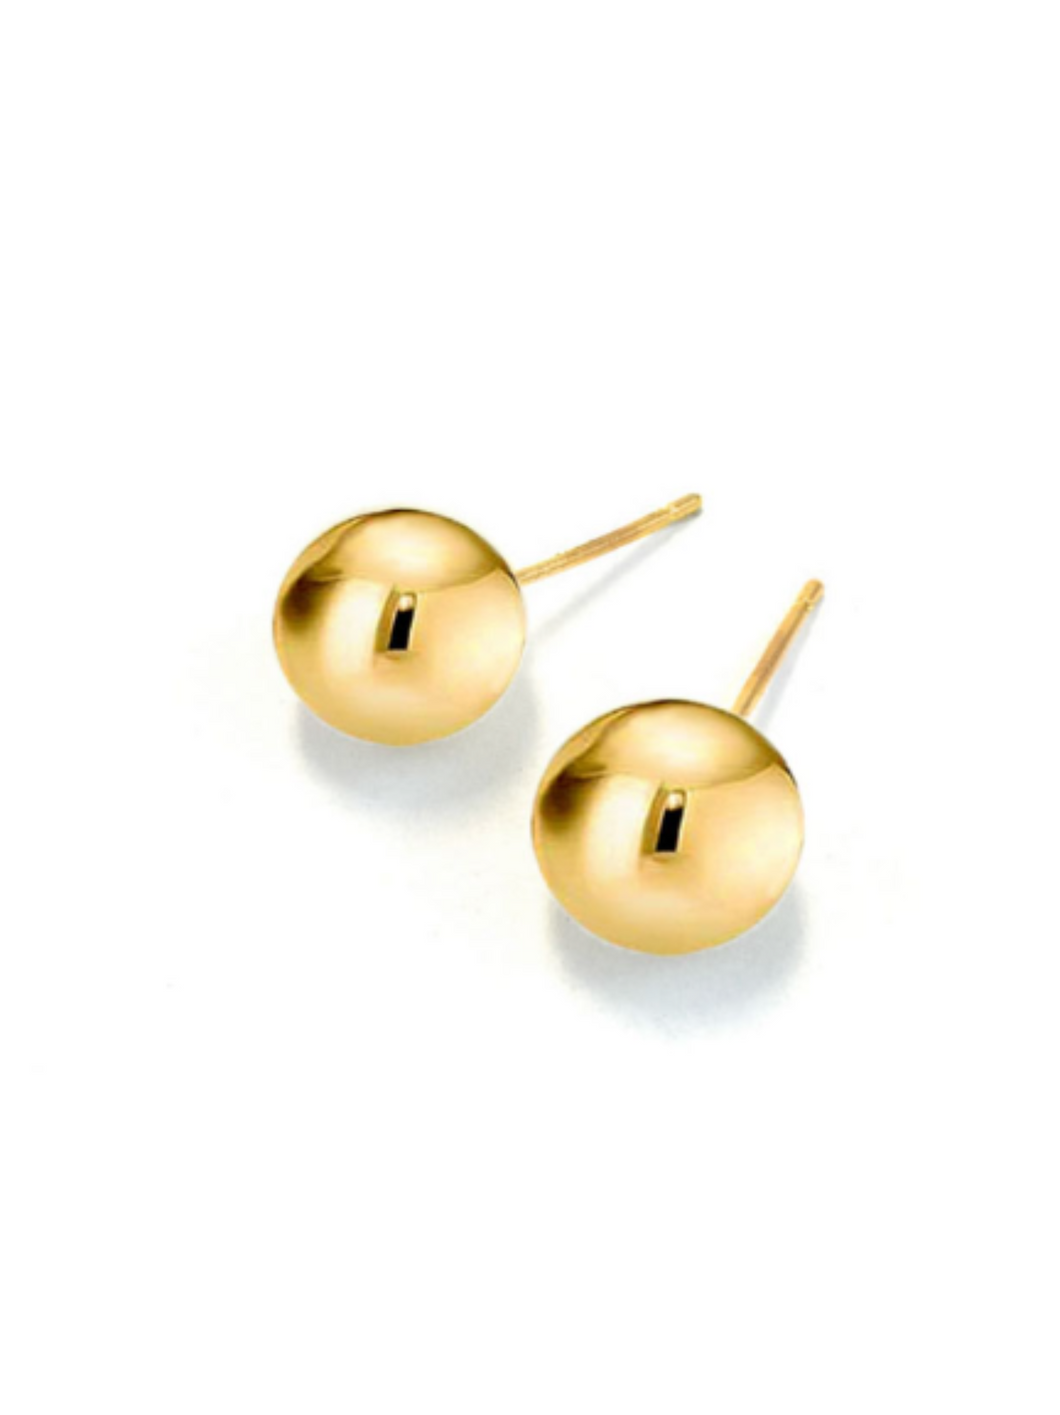 Gold Ball Earrings: Medium